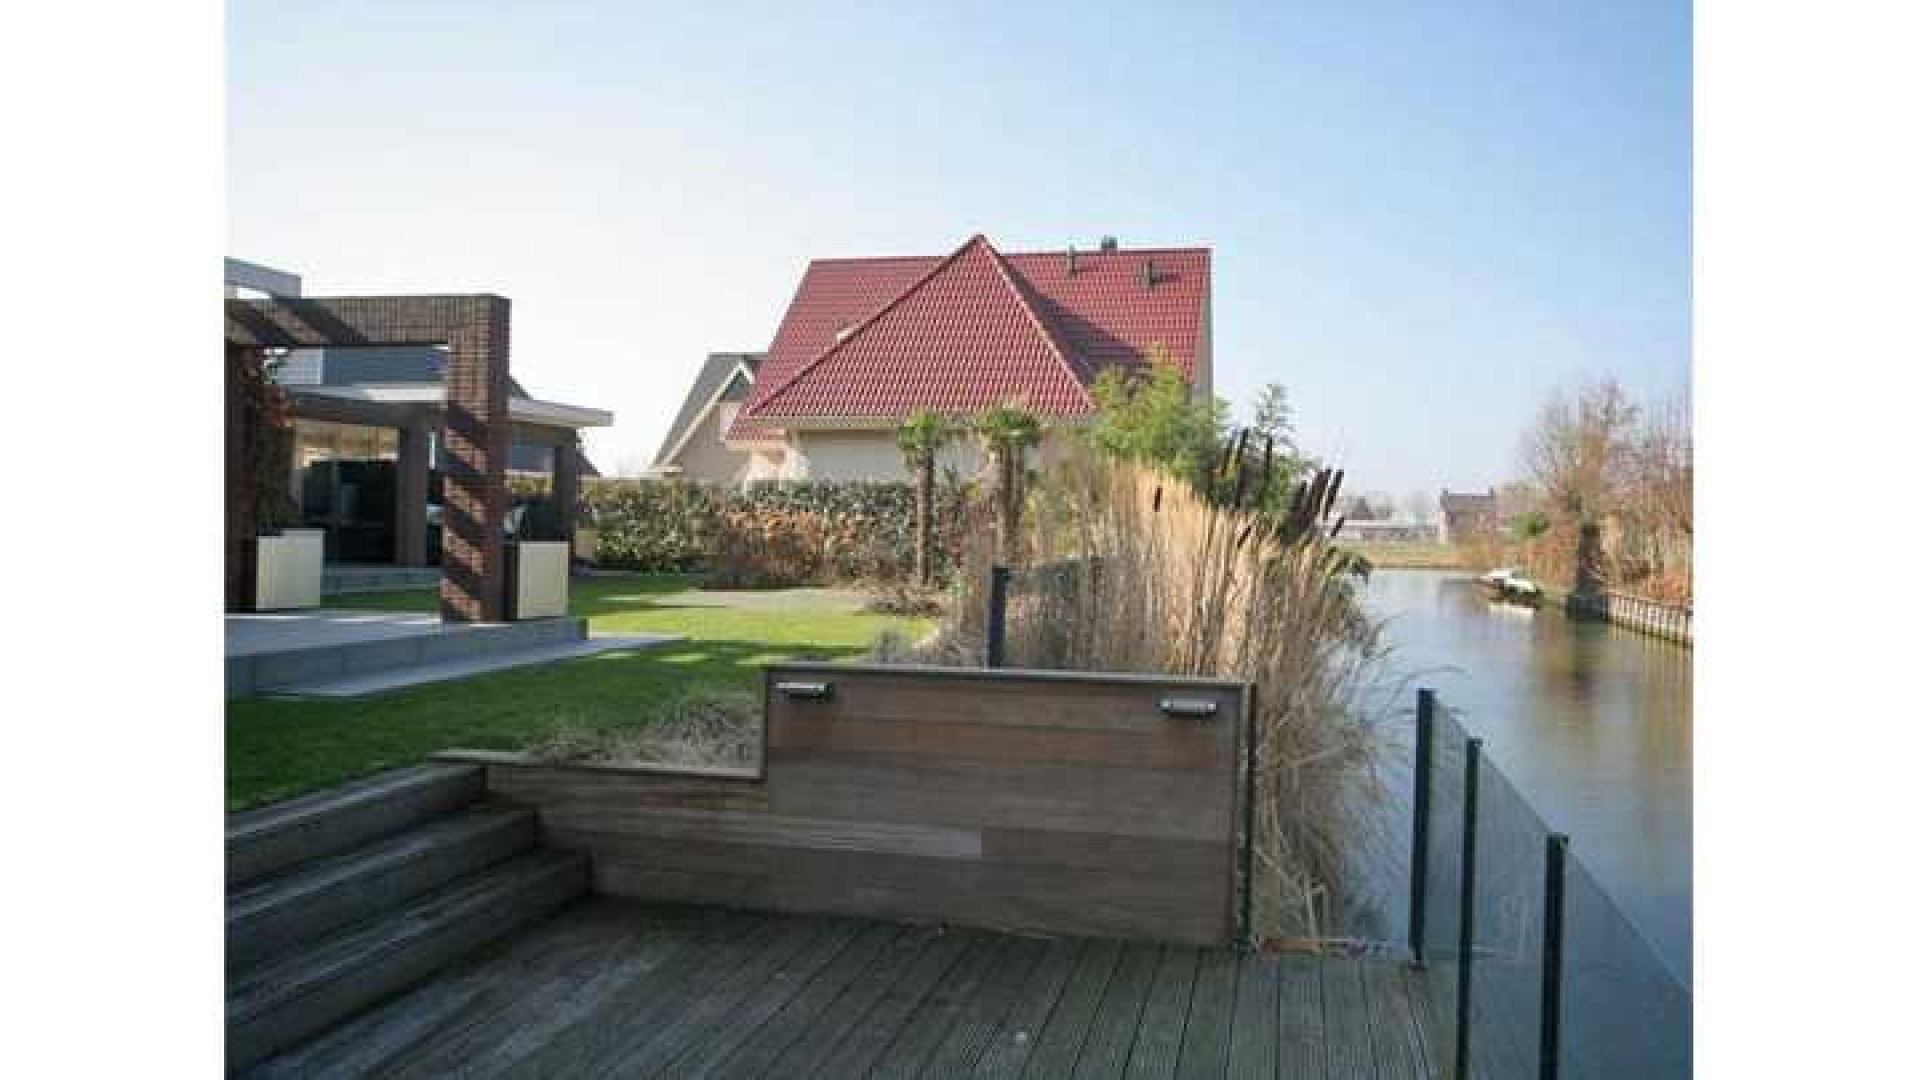 Yolanthe en Wesley Sneijder verhuist naar deze villa in Vleuten. Zie foto's 25